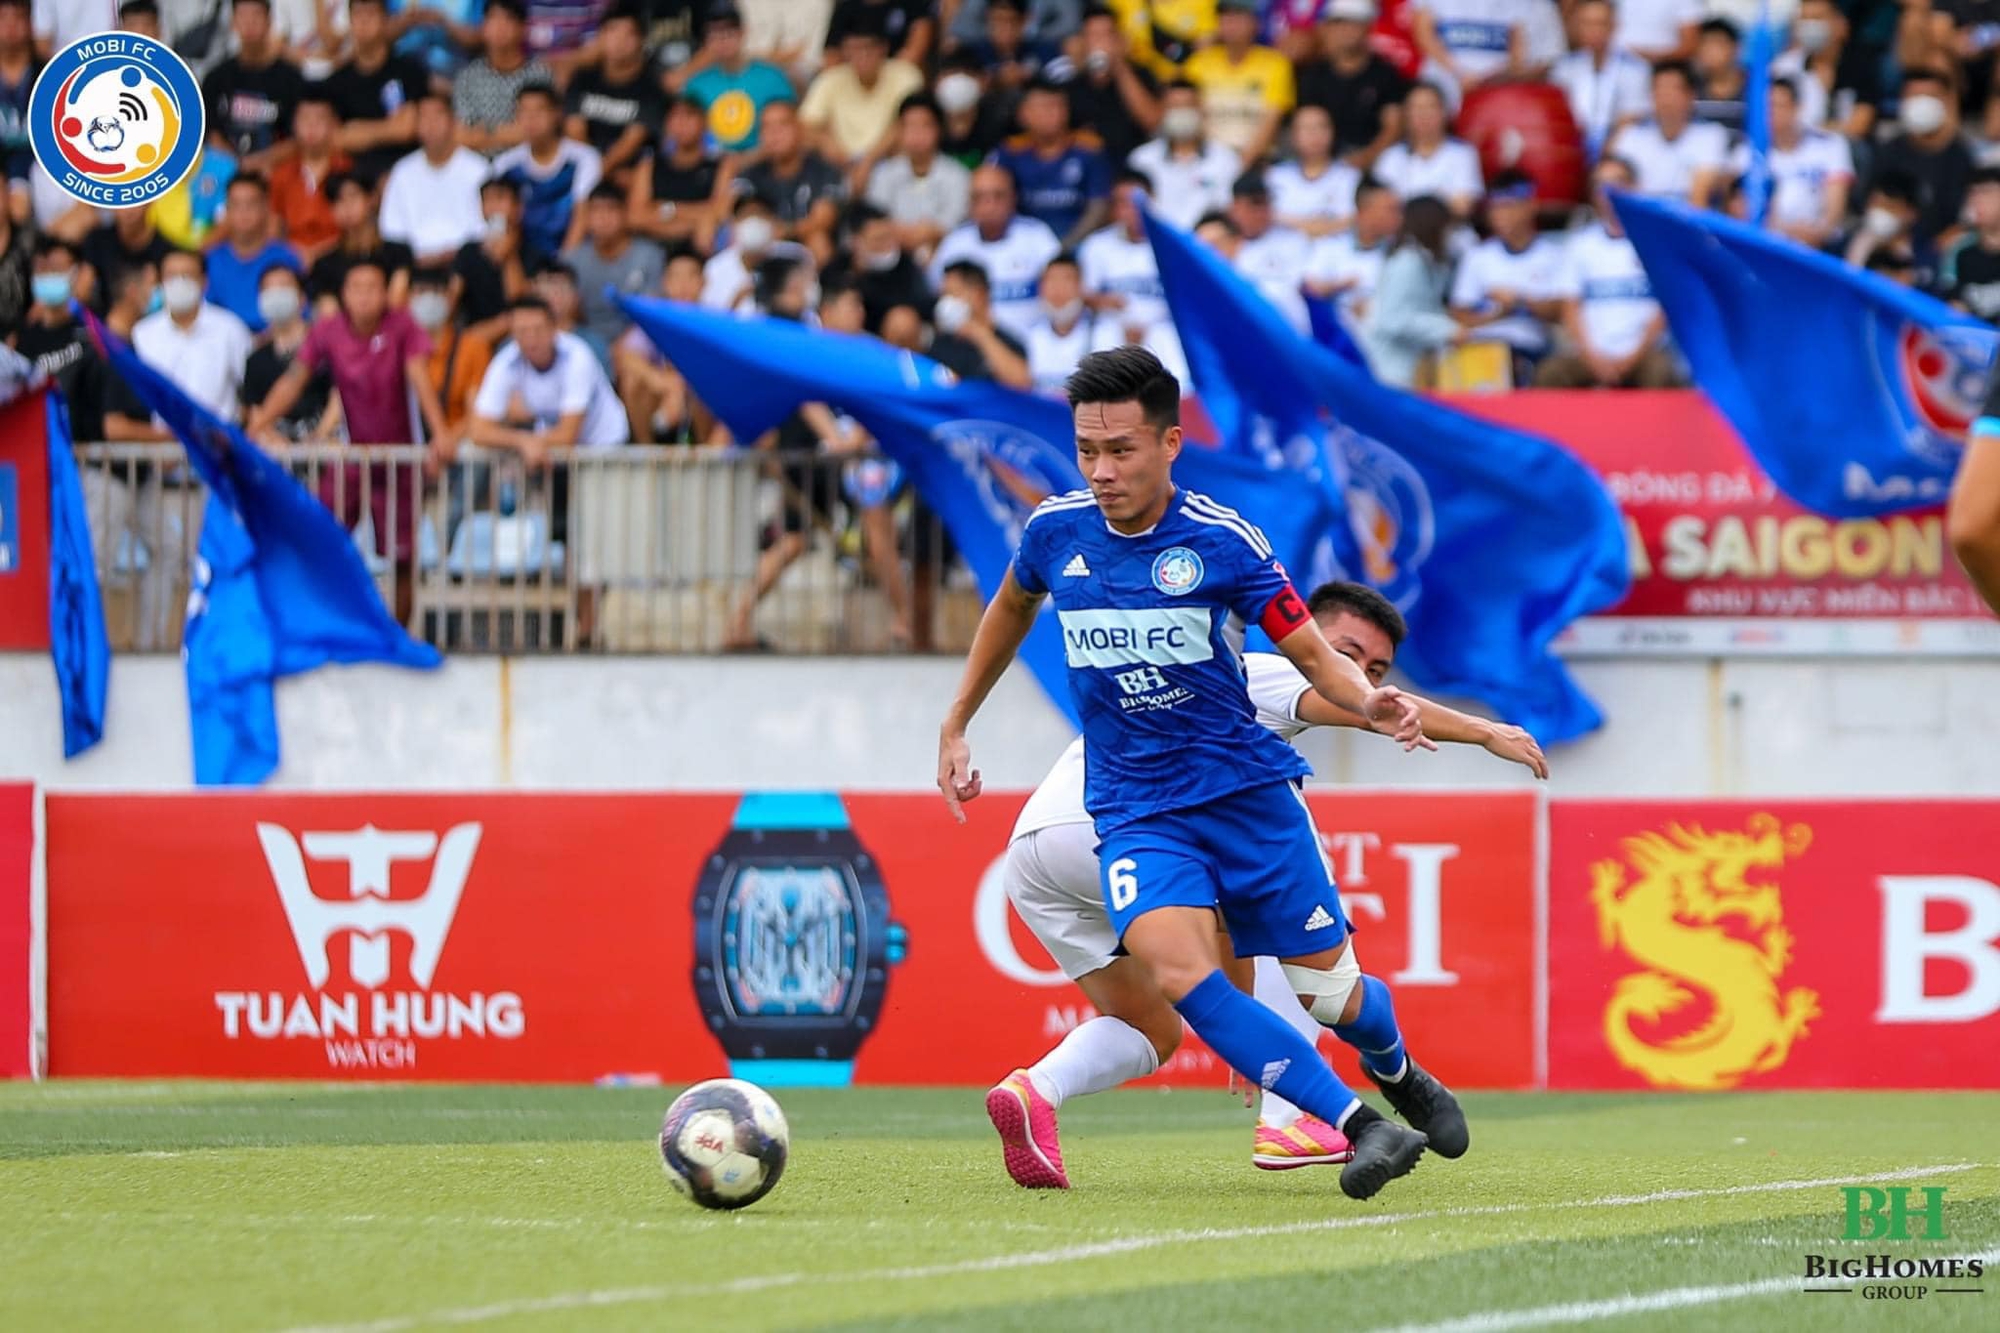 Thủ quân Dương “Híp” nói lời chia tay với FC Mobi - Ảnh 1.